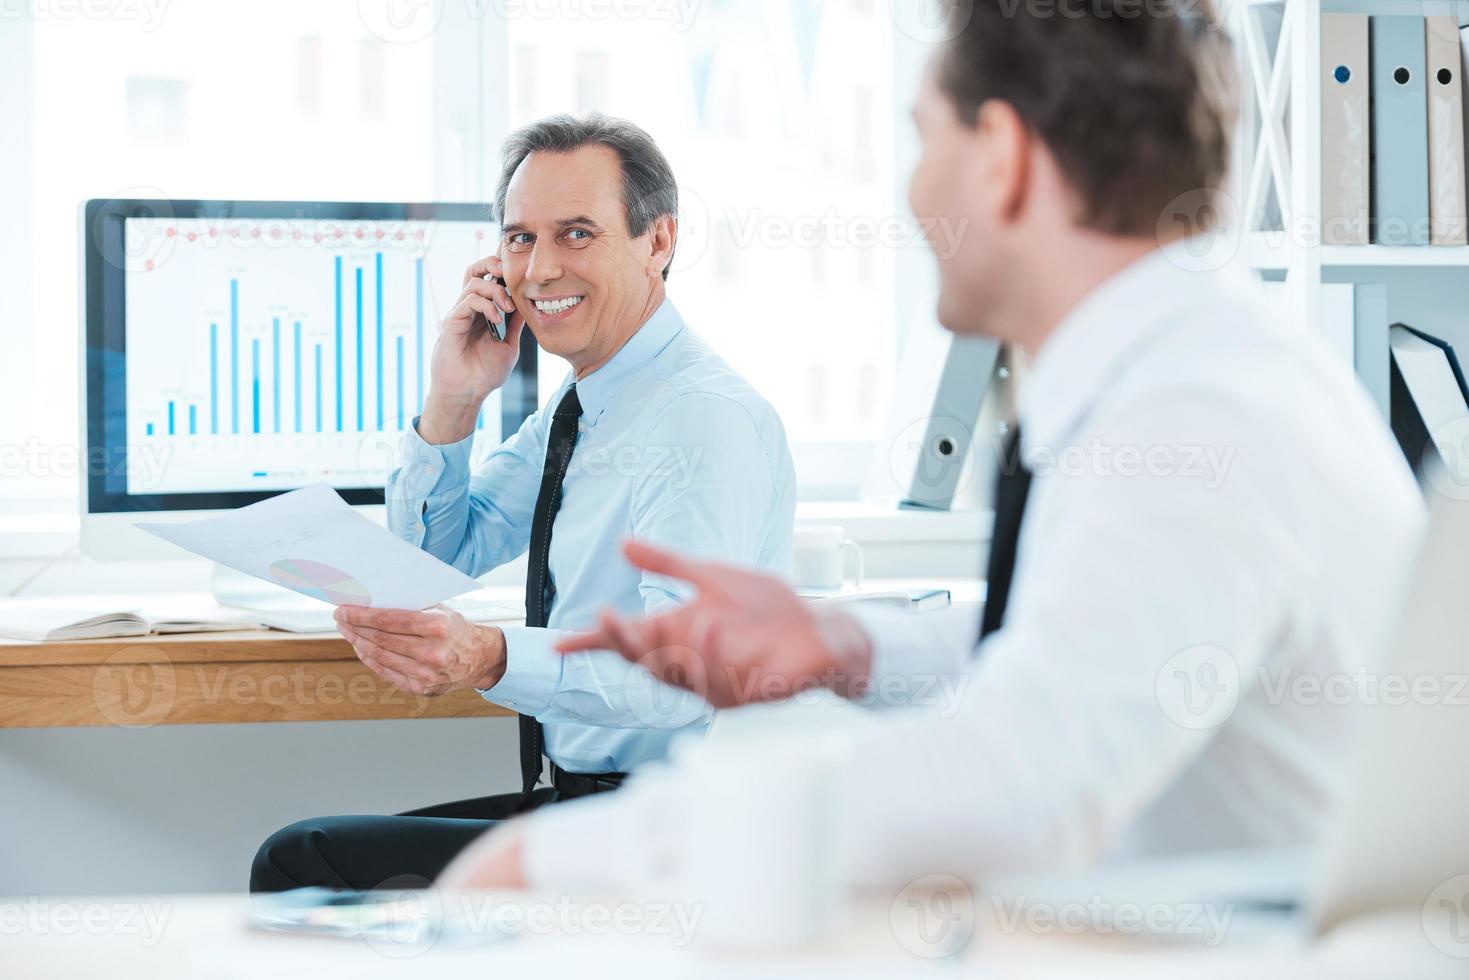 bien hecho dos empresarios alegres en ropa formal discutiendo algo y sonriendo mientras están sentados en la oficina foto